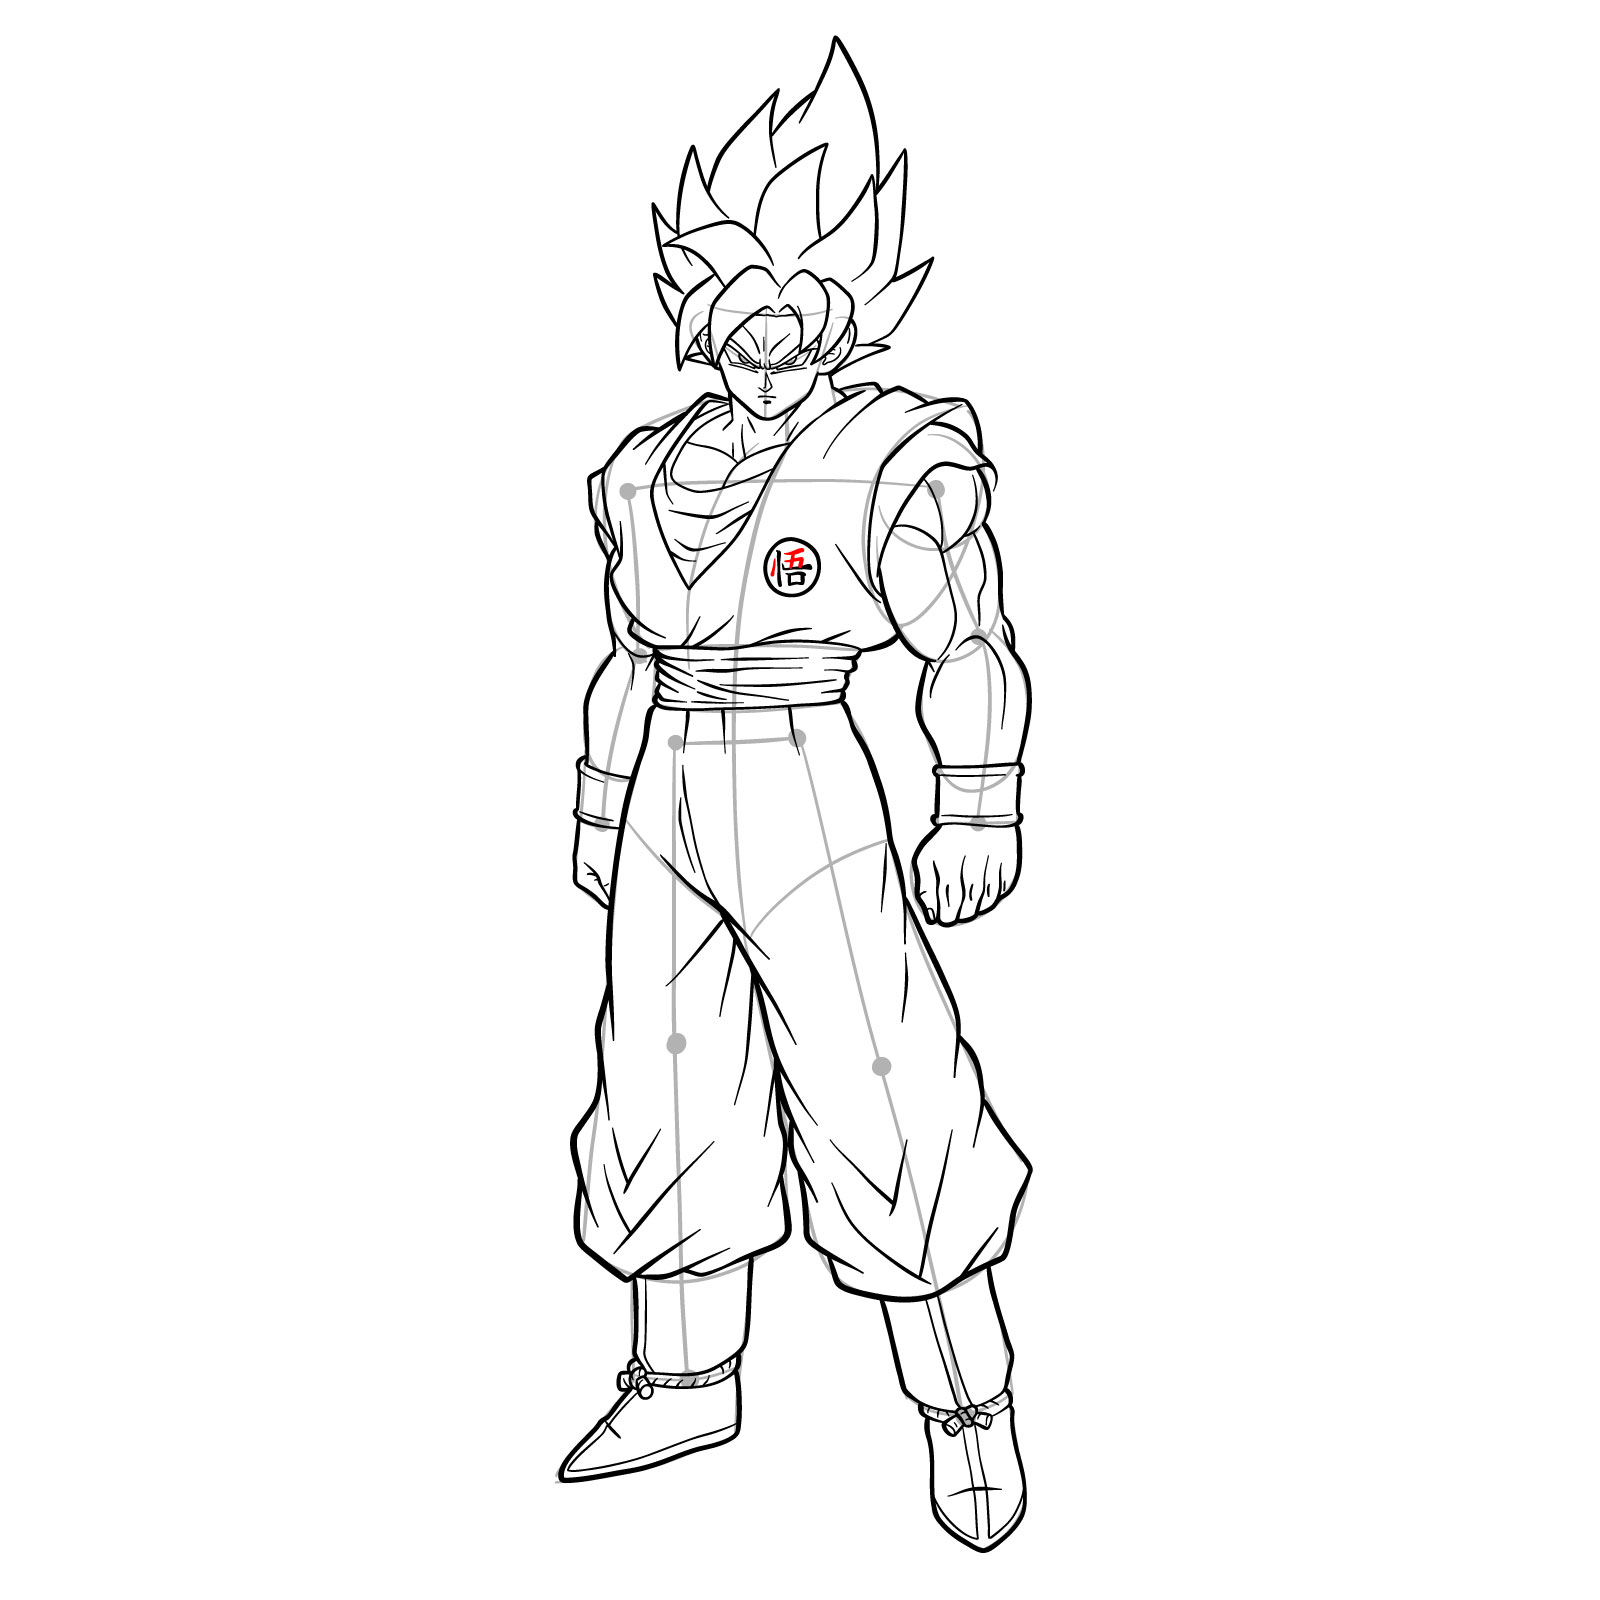 UI Goku but I didn't feel like drawing his entire body : r/Dragonballsuper